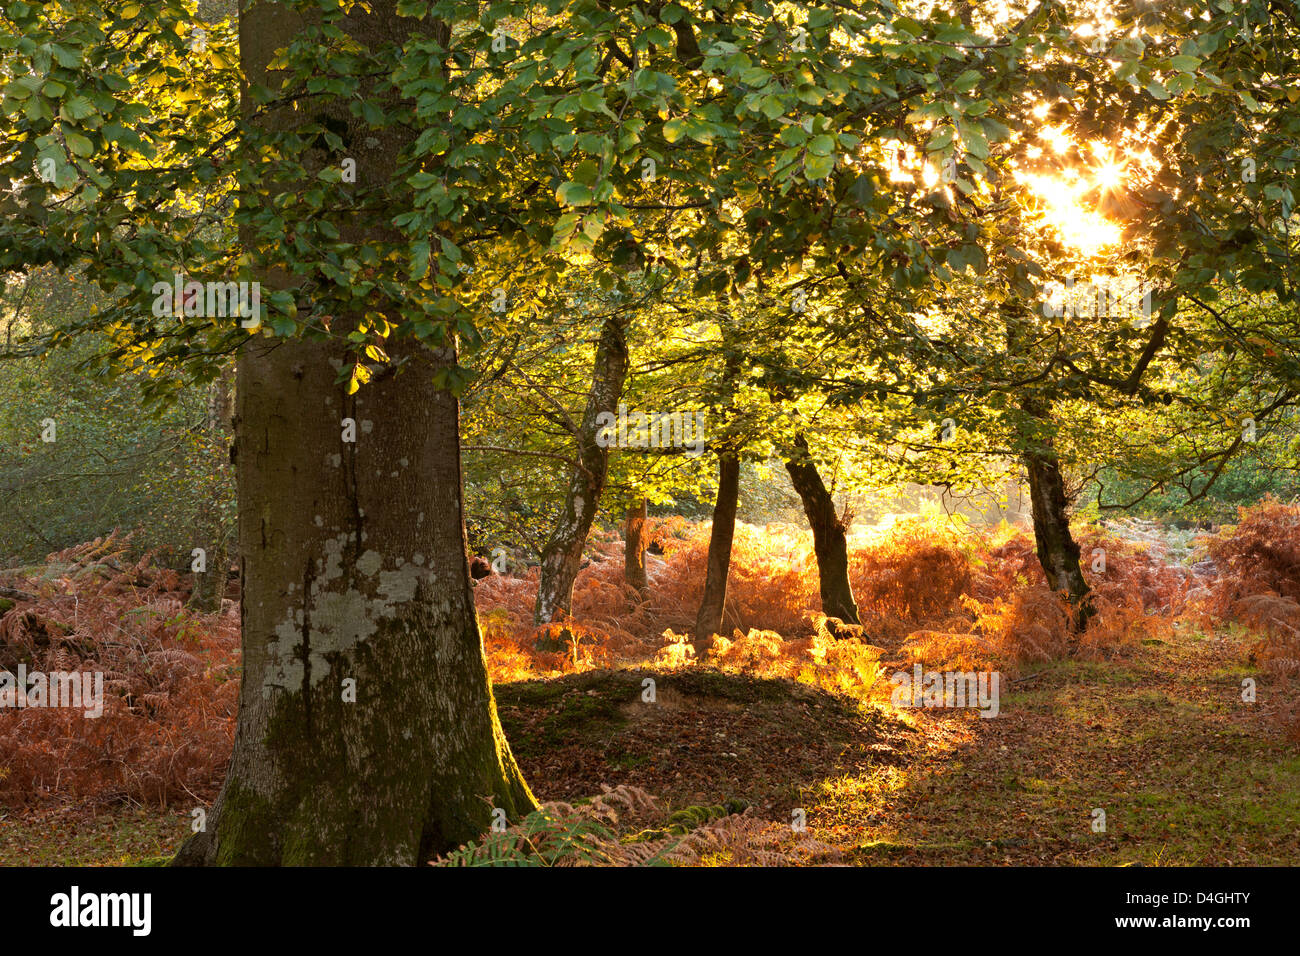 Temprano en la mañana la luz del sol ilumina un bosque deciduo otoñal en el Parque Nacional de New Forest, Hampshire, Inglaterra. Foto de stock